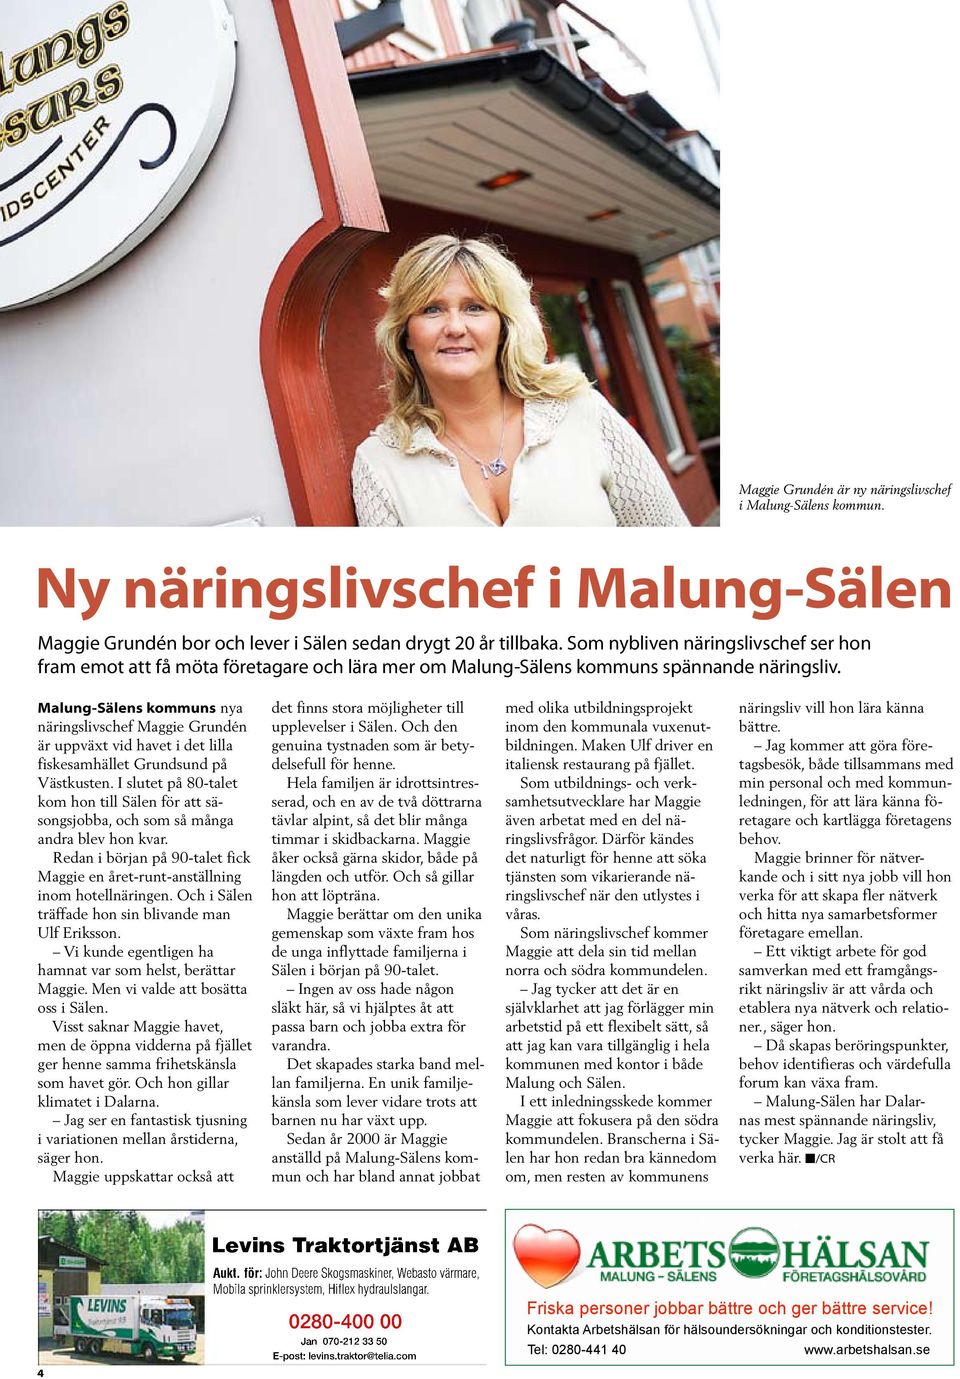 Malung-Sälens kommuns nya näringslivschef Maggie Grundén är uppväxt vid havet i det lilla fiskesamhället Grundsund på Västkusten.